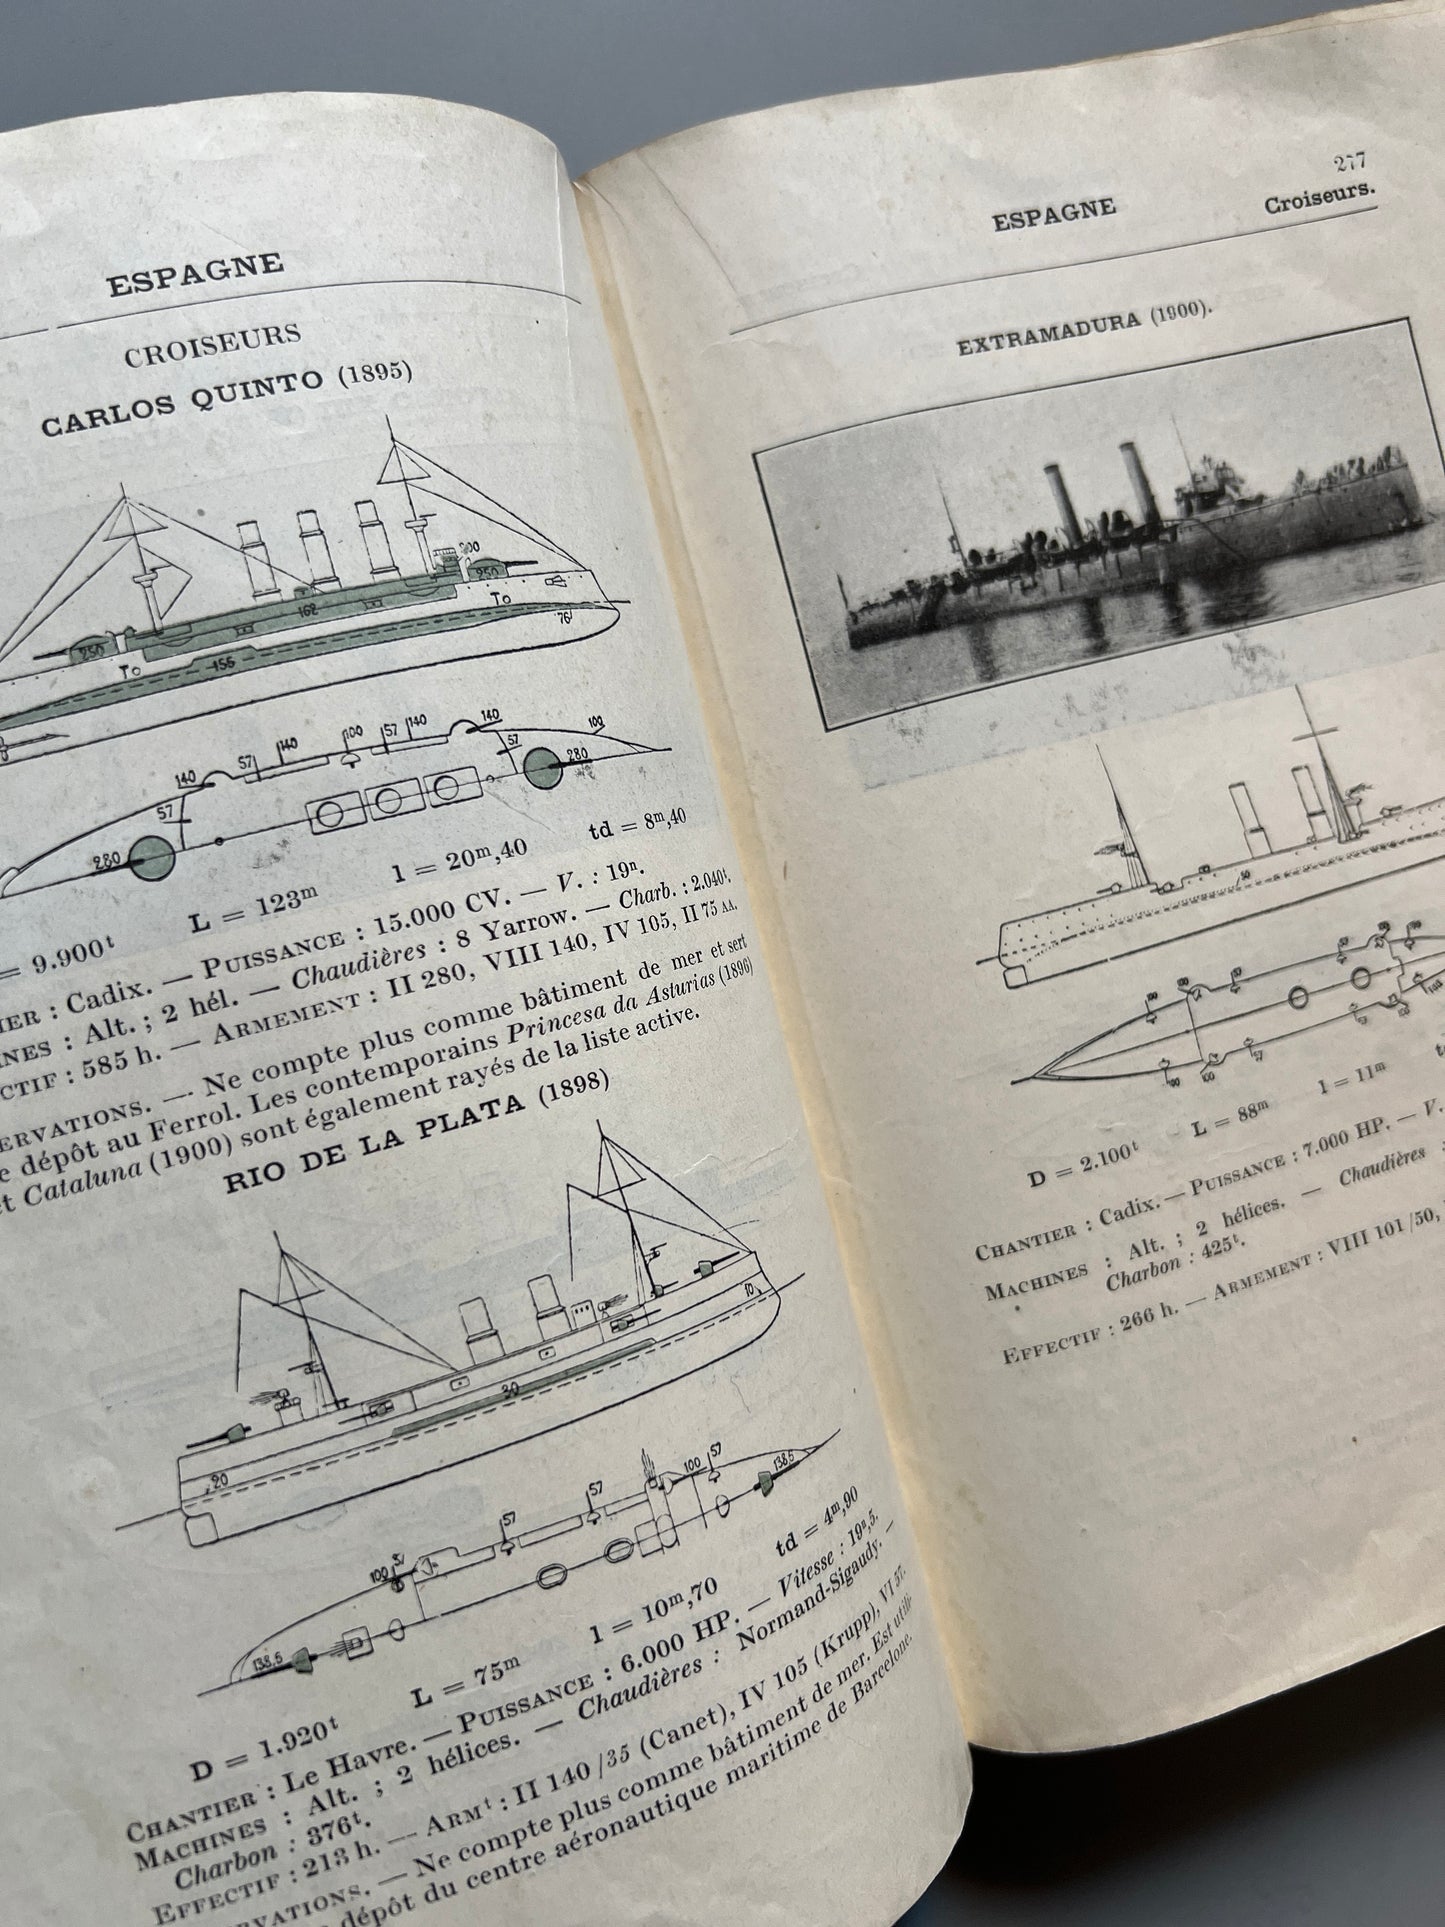 Les flottes de combat 1931, Commandant Balincourt y Vincent-Bréchignac - Sociétè d'Editions, 1931